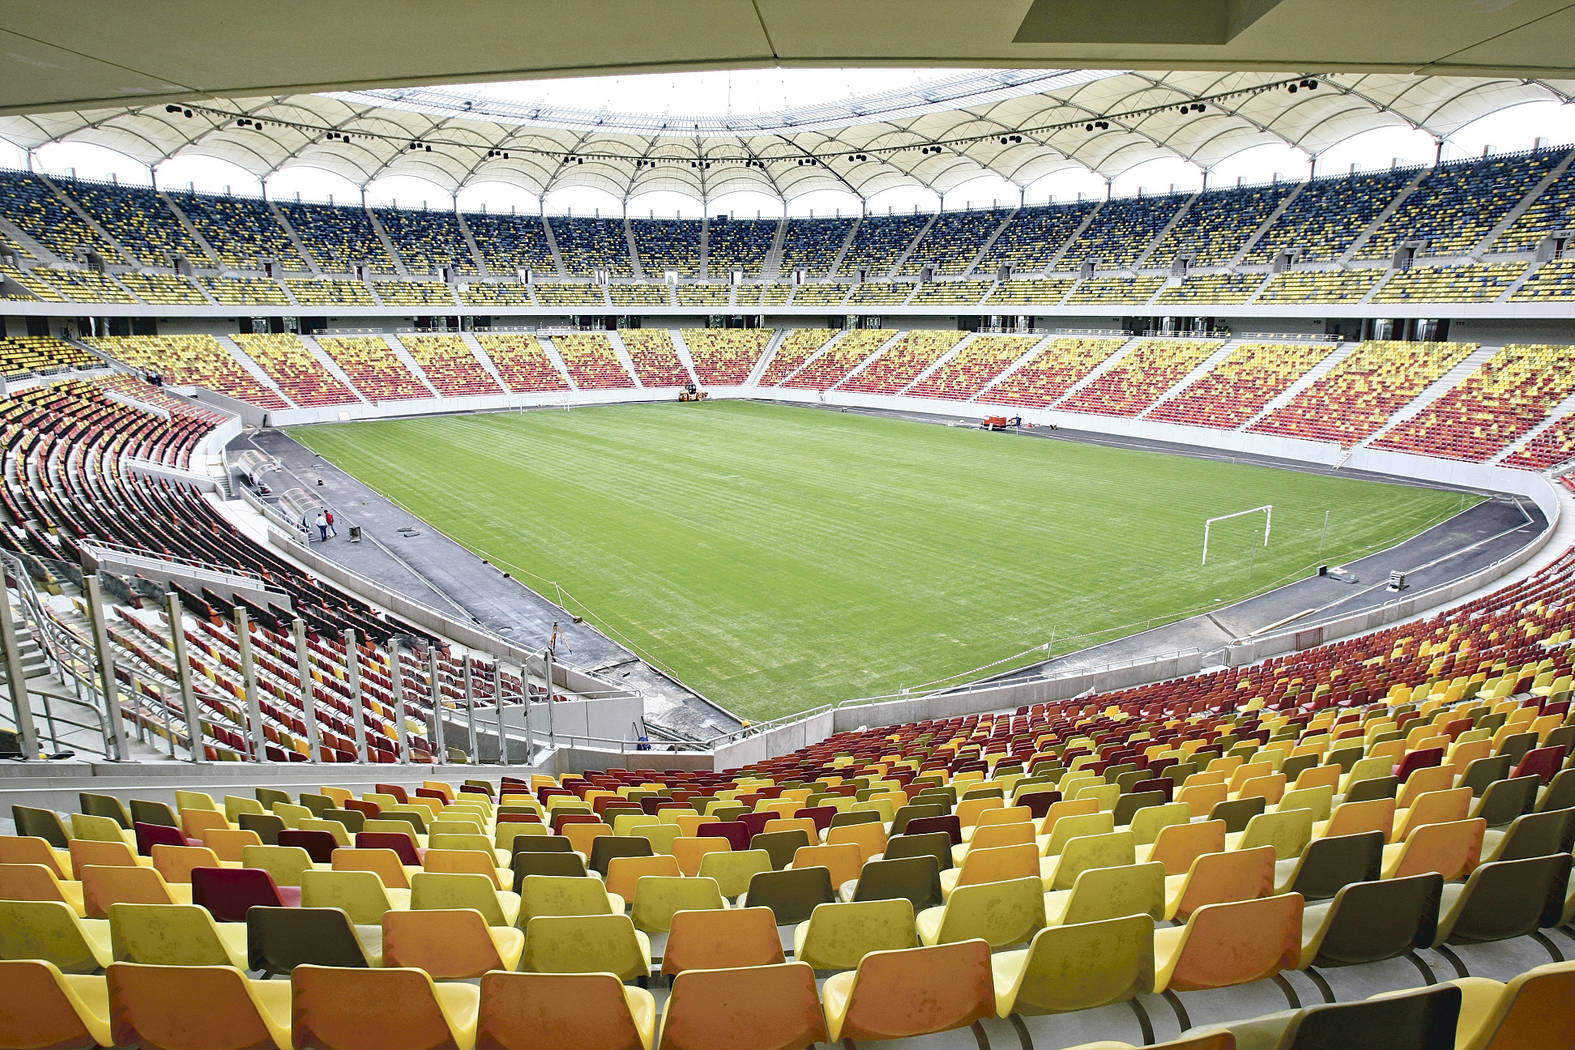 In 2020, National Arena ar putea gazdui meciuri importante din Campionatul European de Fotbal